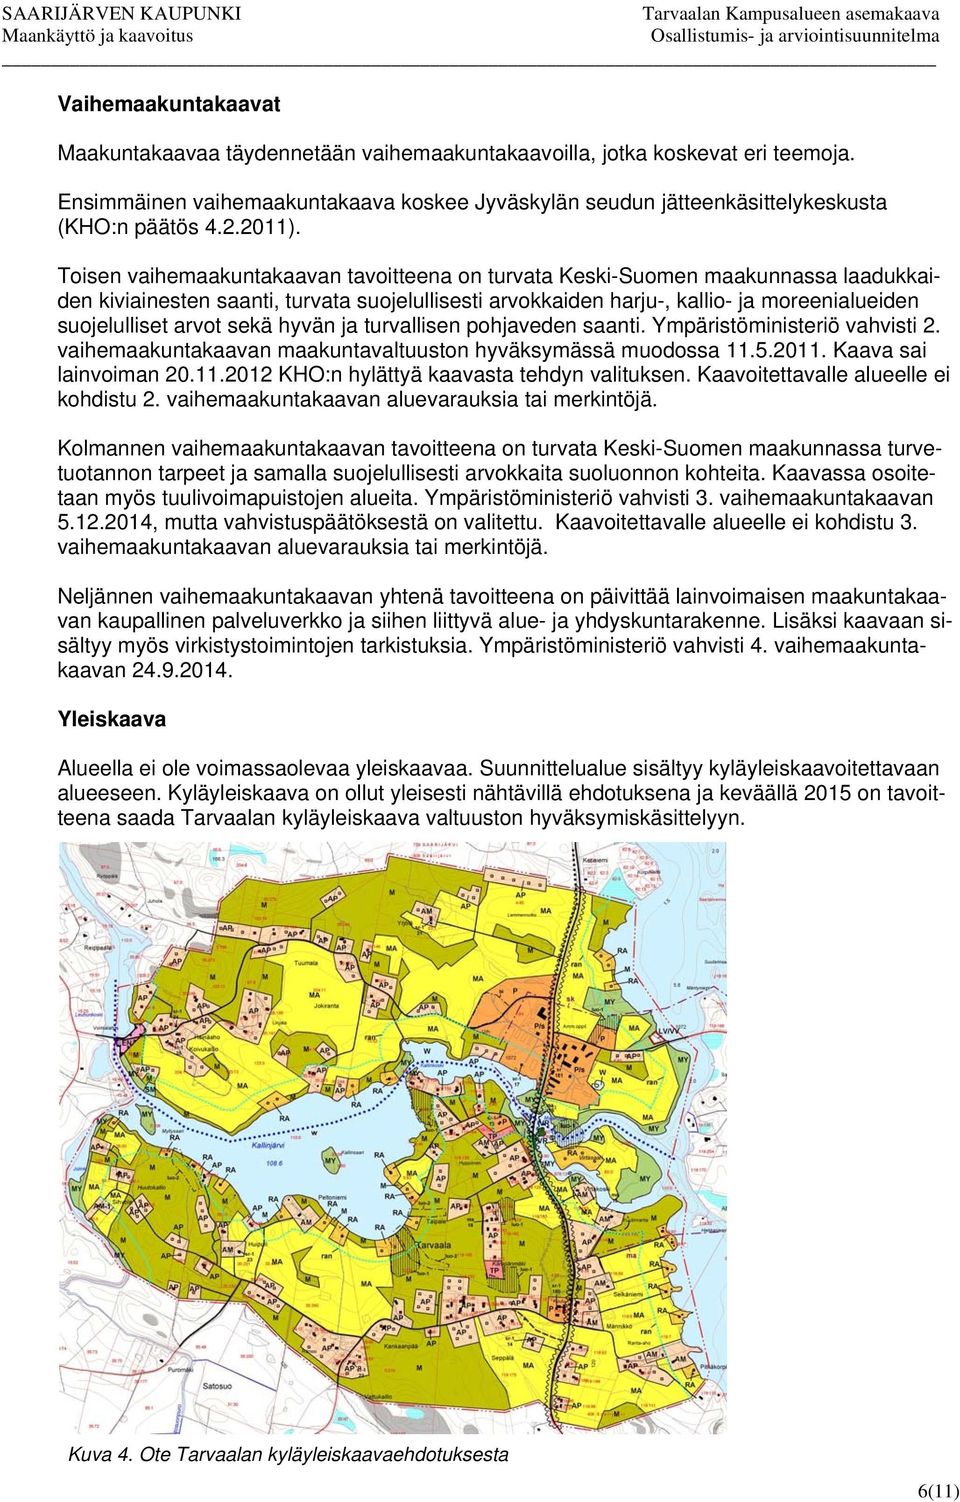 Toisen vaihemaakuntakaavan tavoitteena on turvata Keski-Suomen maakunnassa laadukkaiden kiviainesten saanti, turvata suojelullisesti arvokkaiden harju-, kallio- ja moreenialueiden suojelulliset arvot